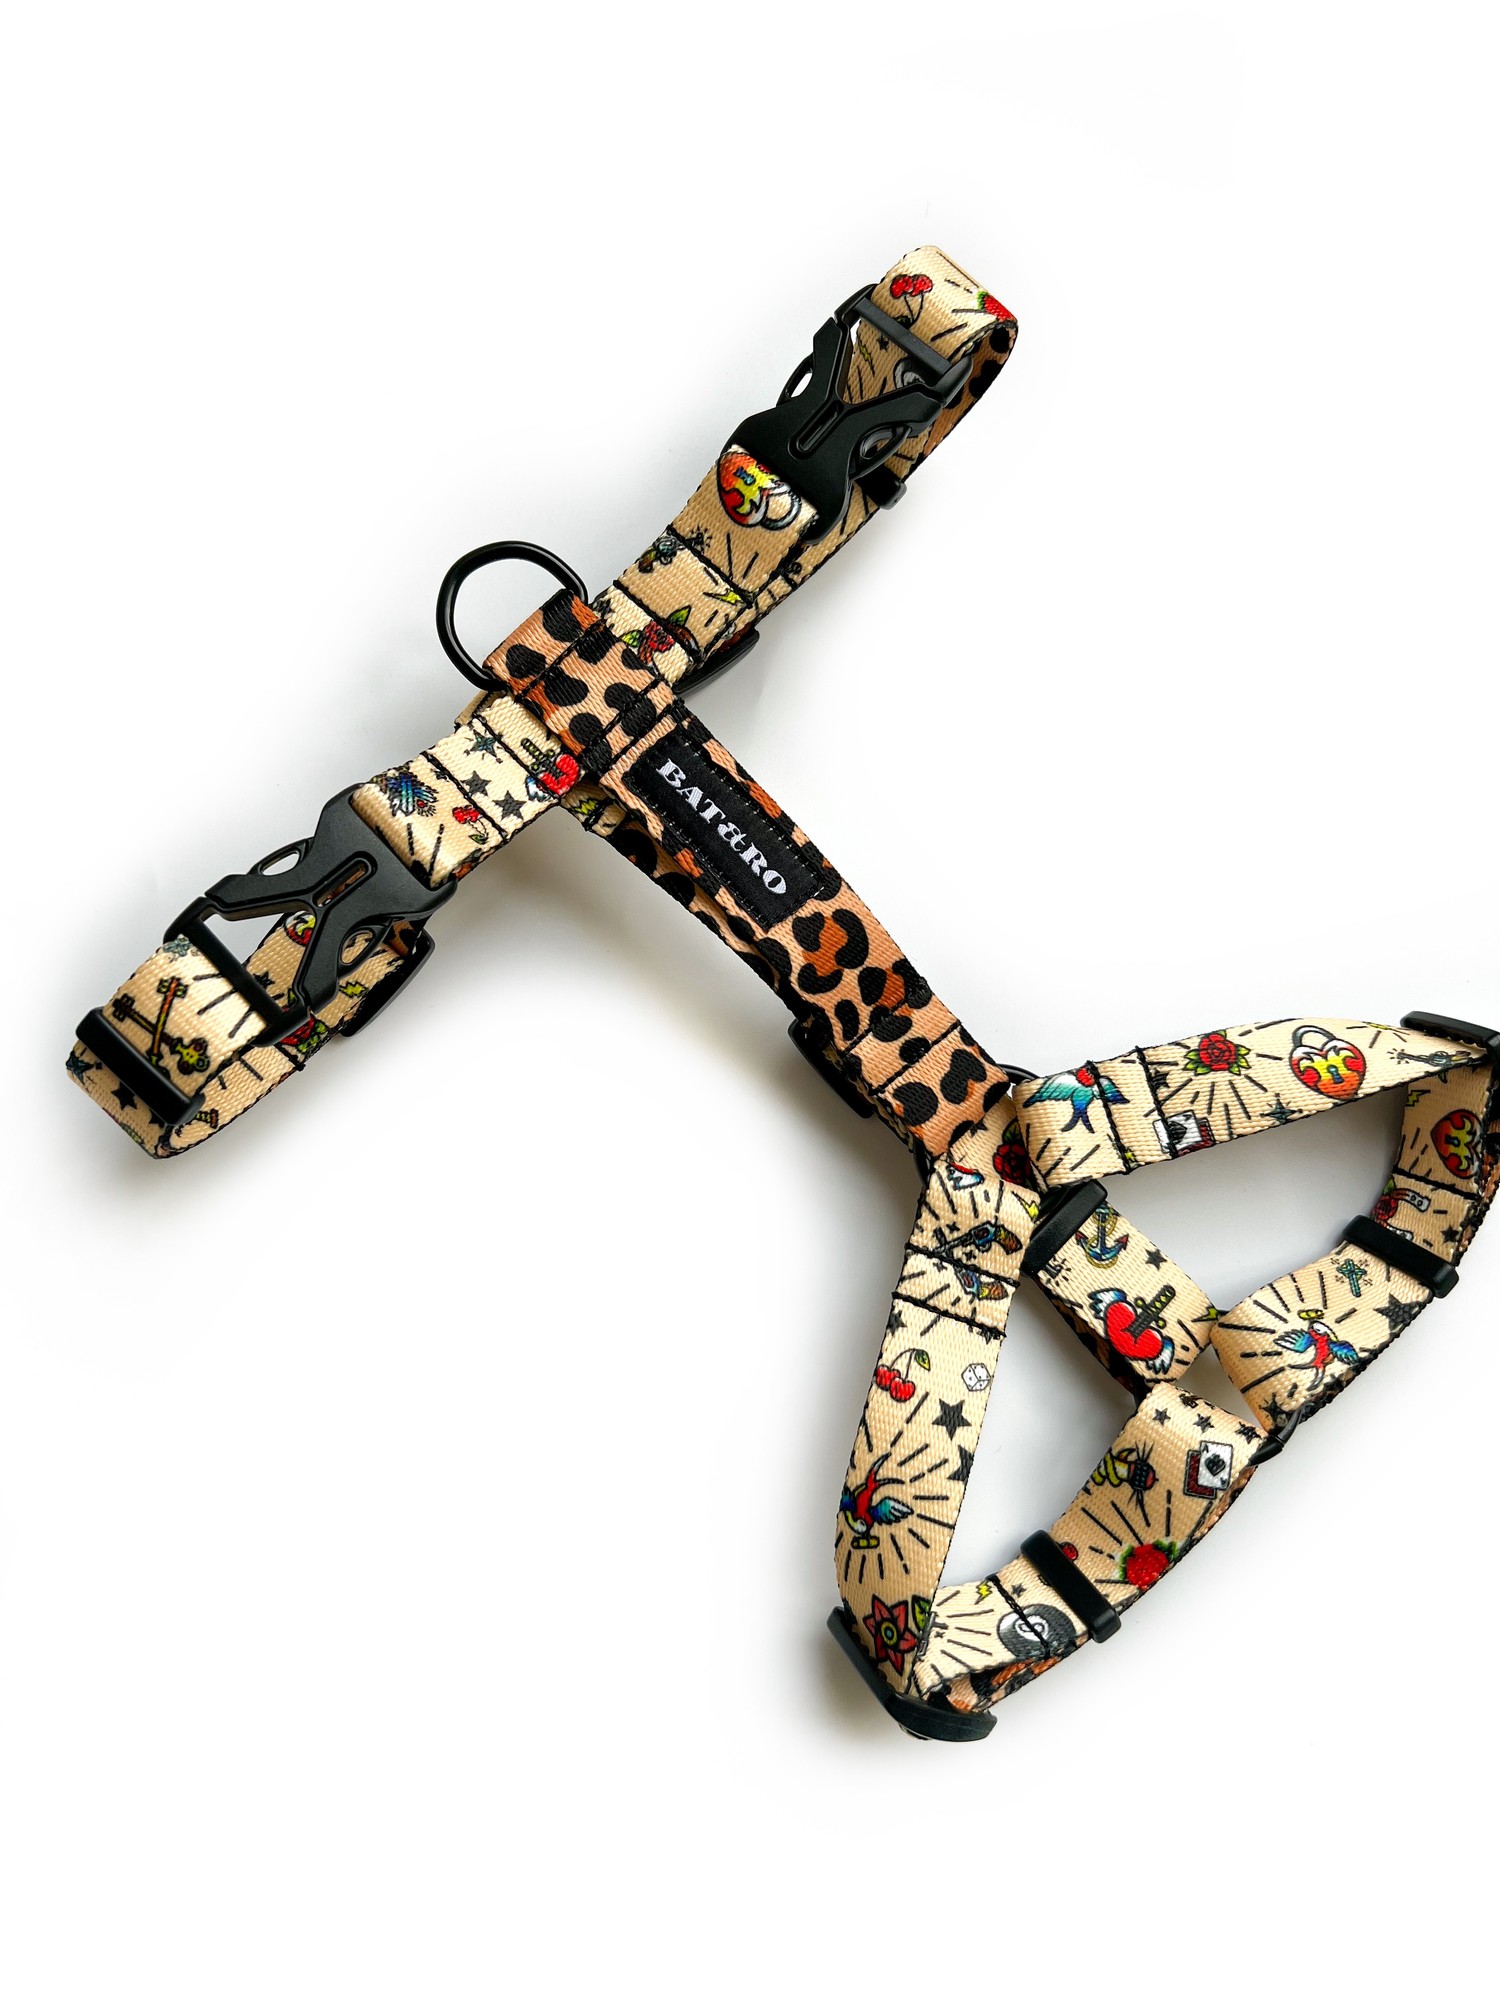 Nylon dog h-harness BAT&RO "Tattoo", size L